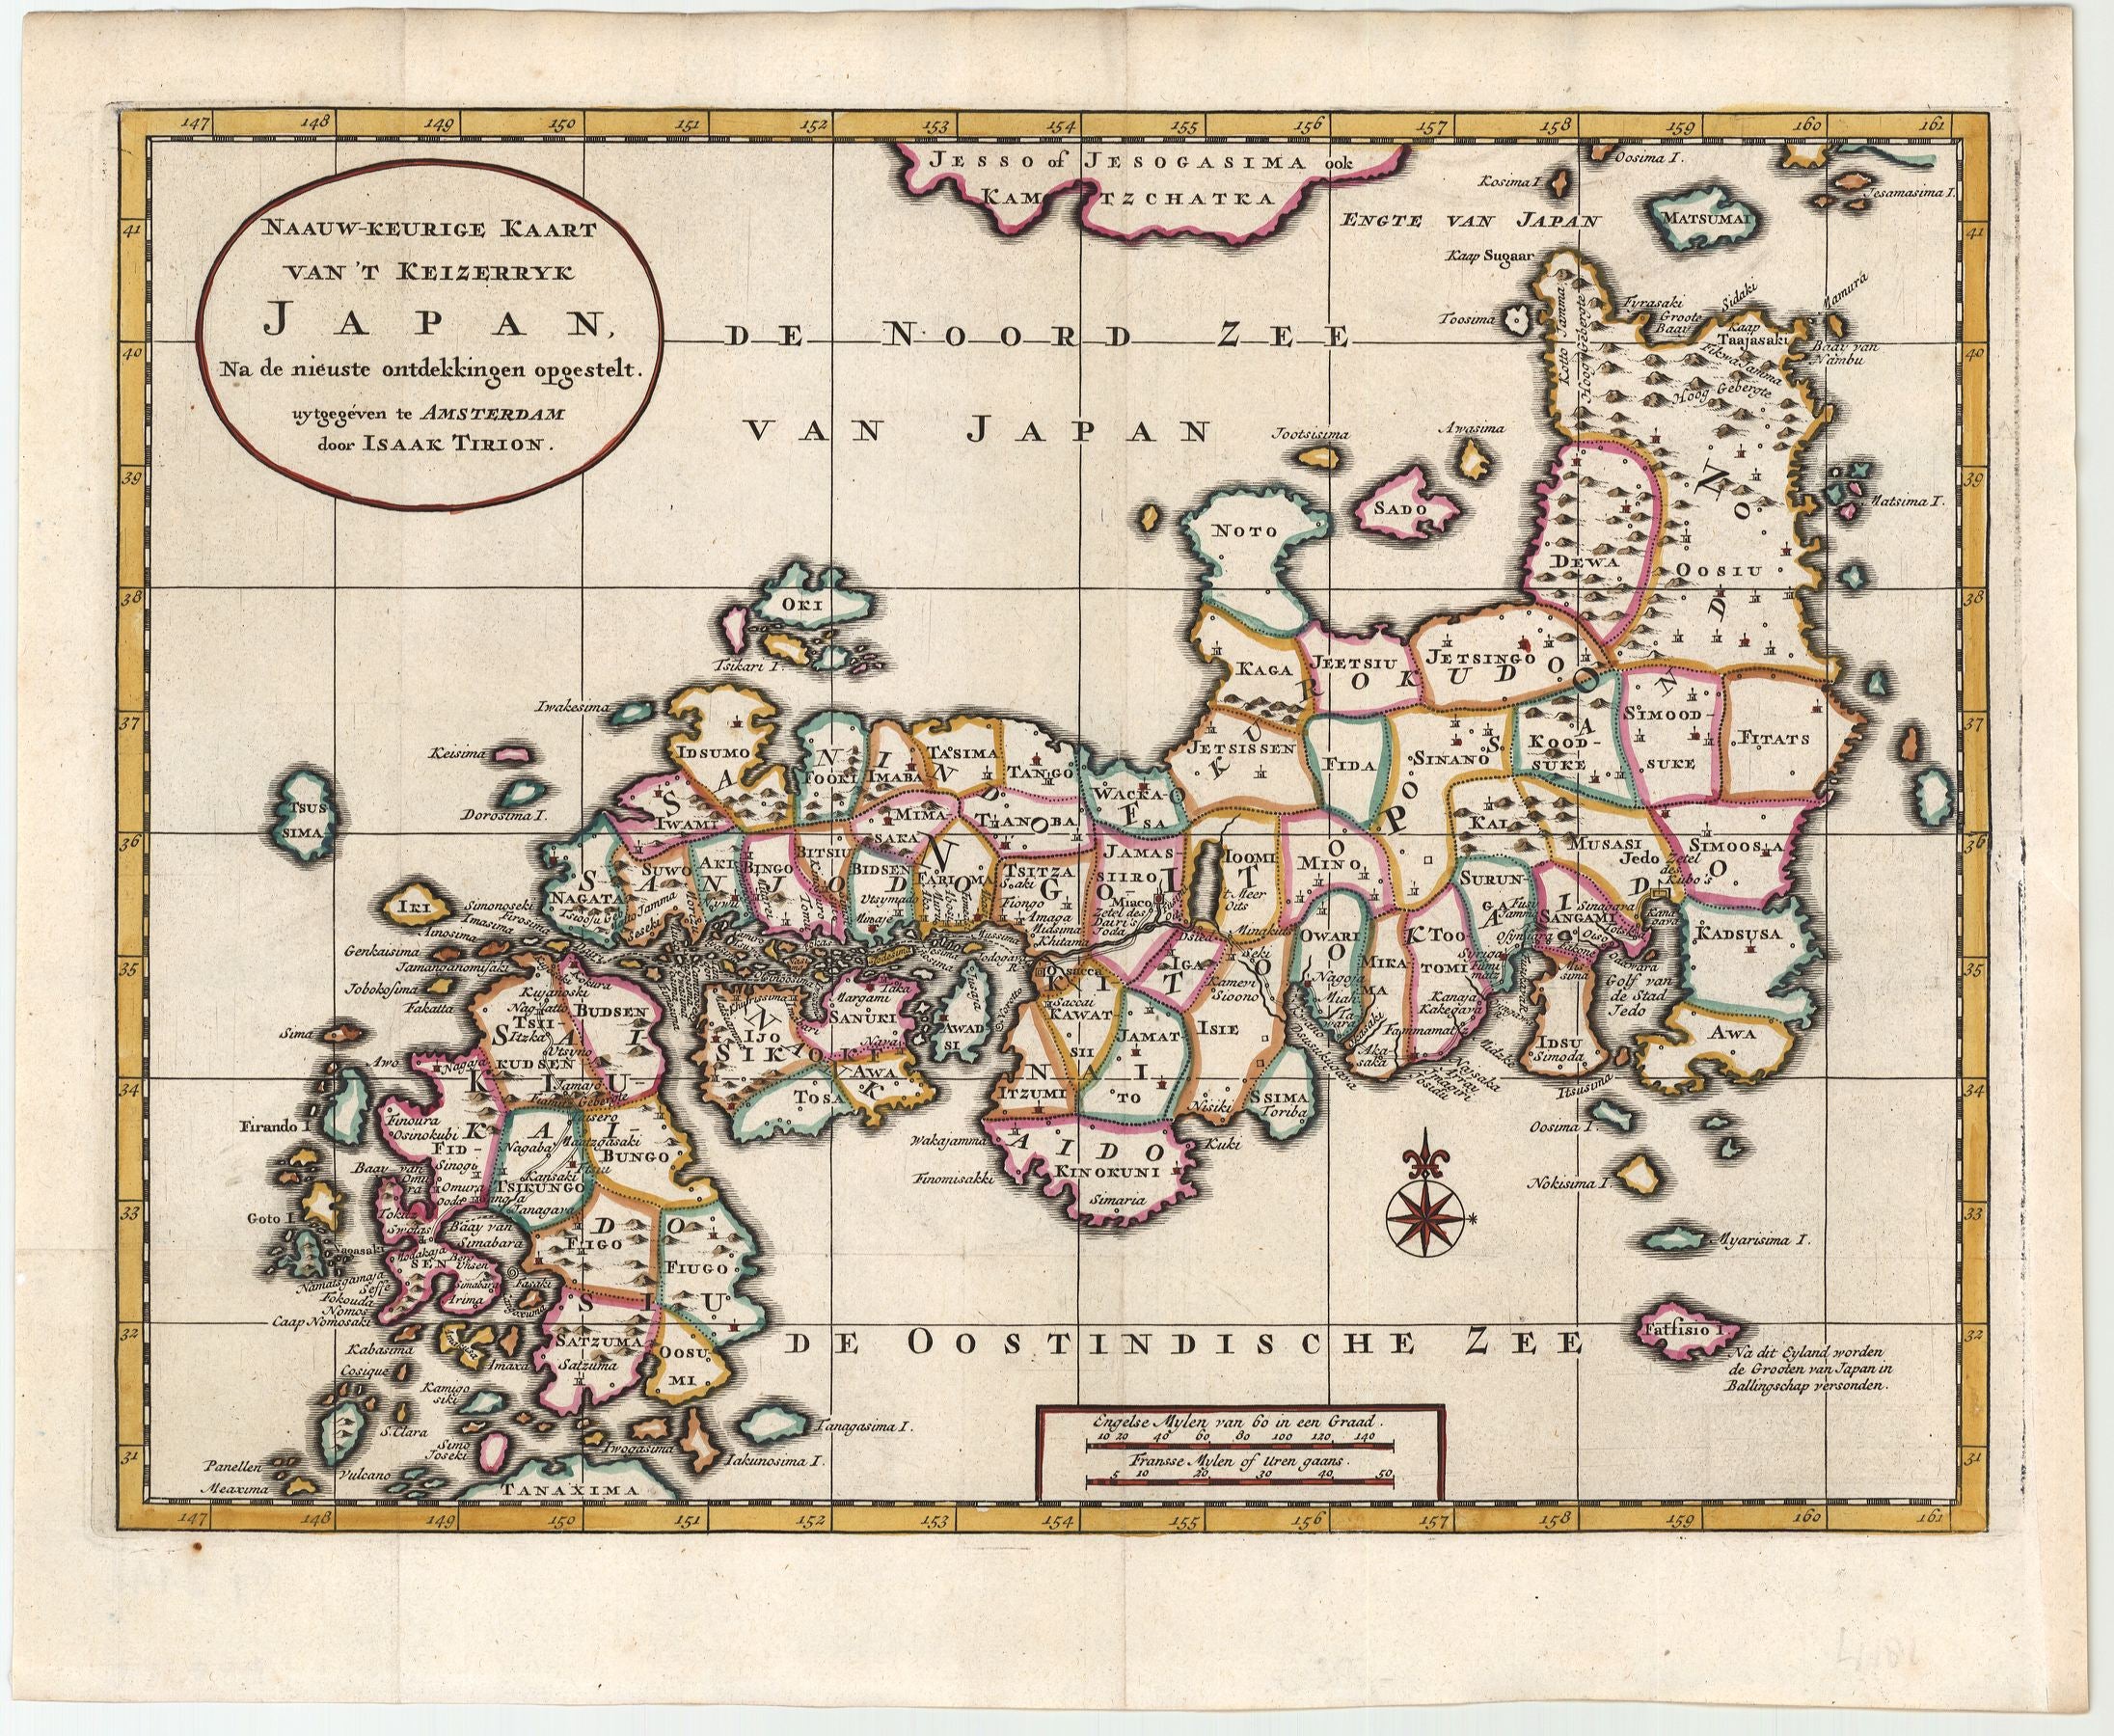 R3144  Tirion, Isaac: Naauw-Keurige Kaart van ´t Keizerryk Japan, Na de nieuste ontdekkingen opgestelt. 1728